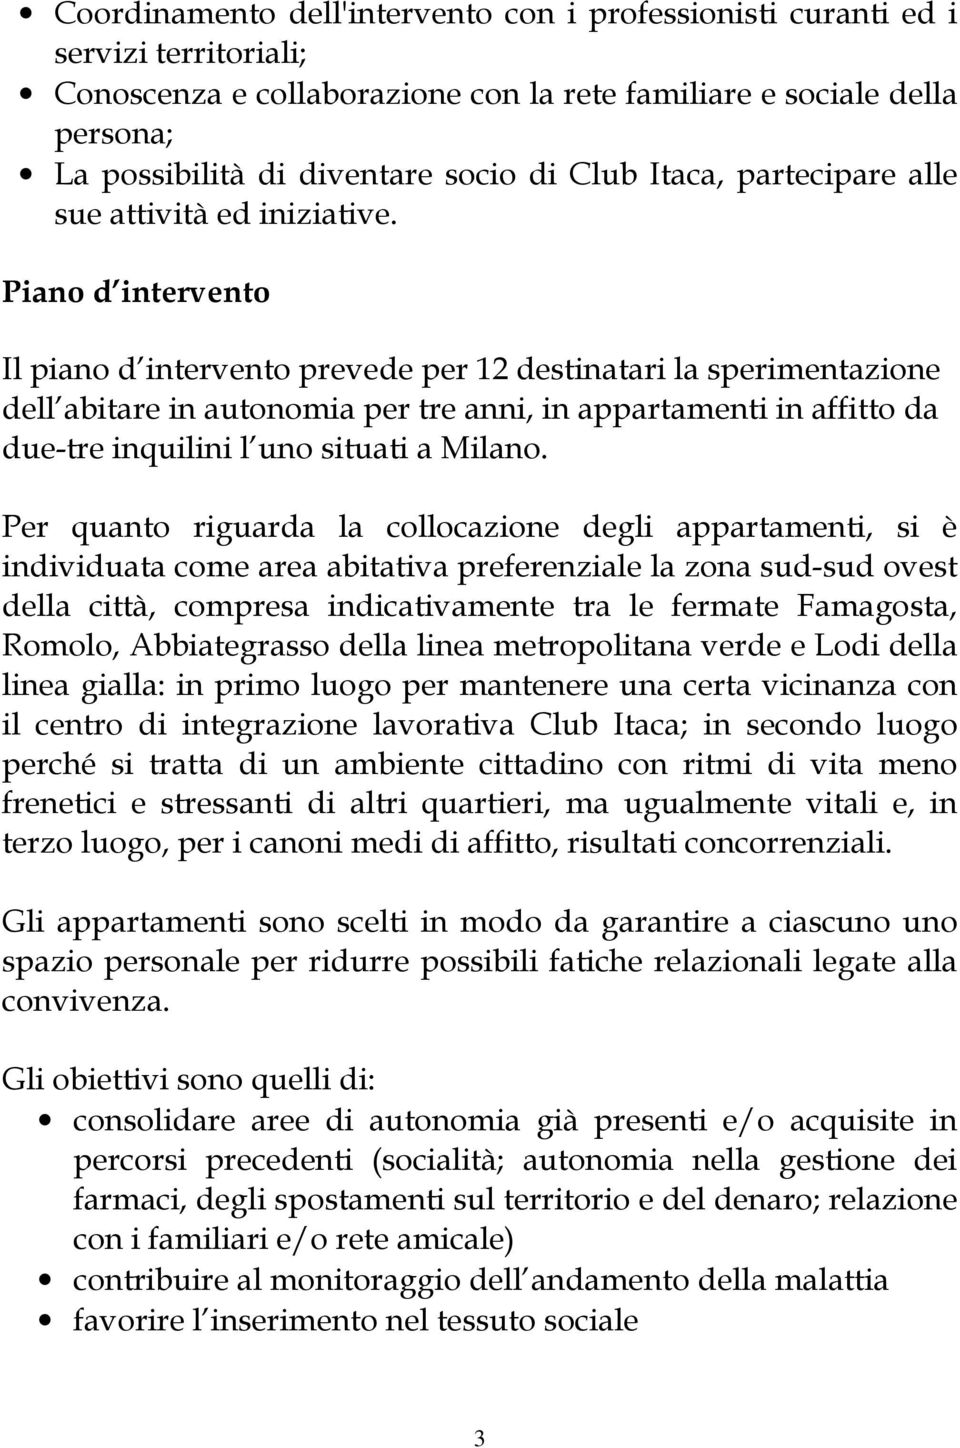 Piano d intervento Il piano d intervento prevede per 12 destinatari la sperimentazione dell abitare in autonomia per tre anni, in appartamenti in affitto da due-tre inquilini l uno situati a Milano.